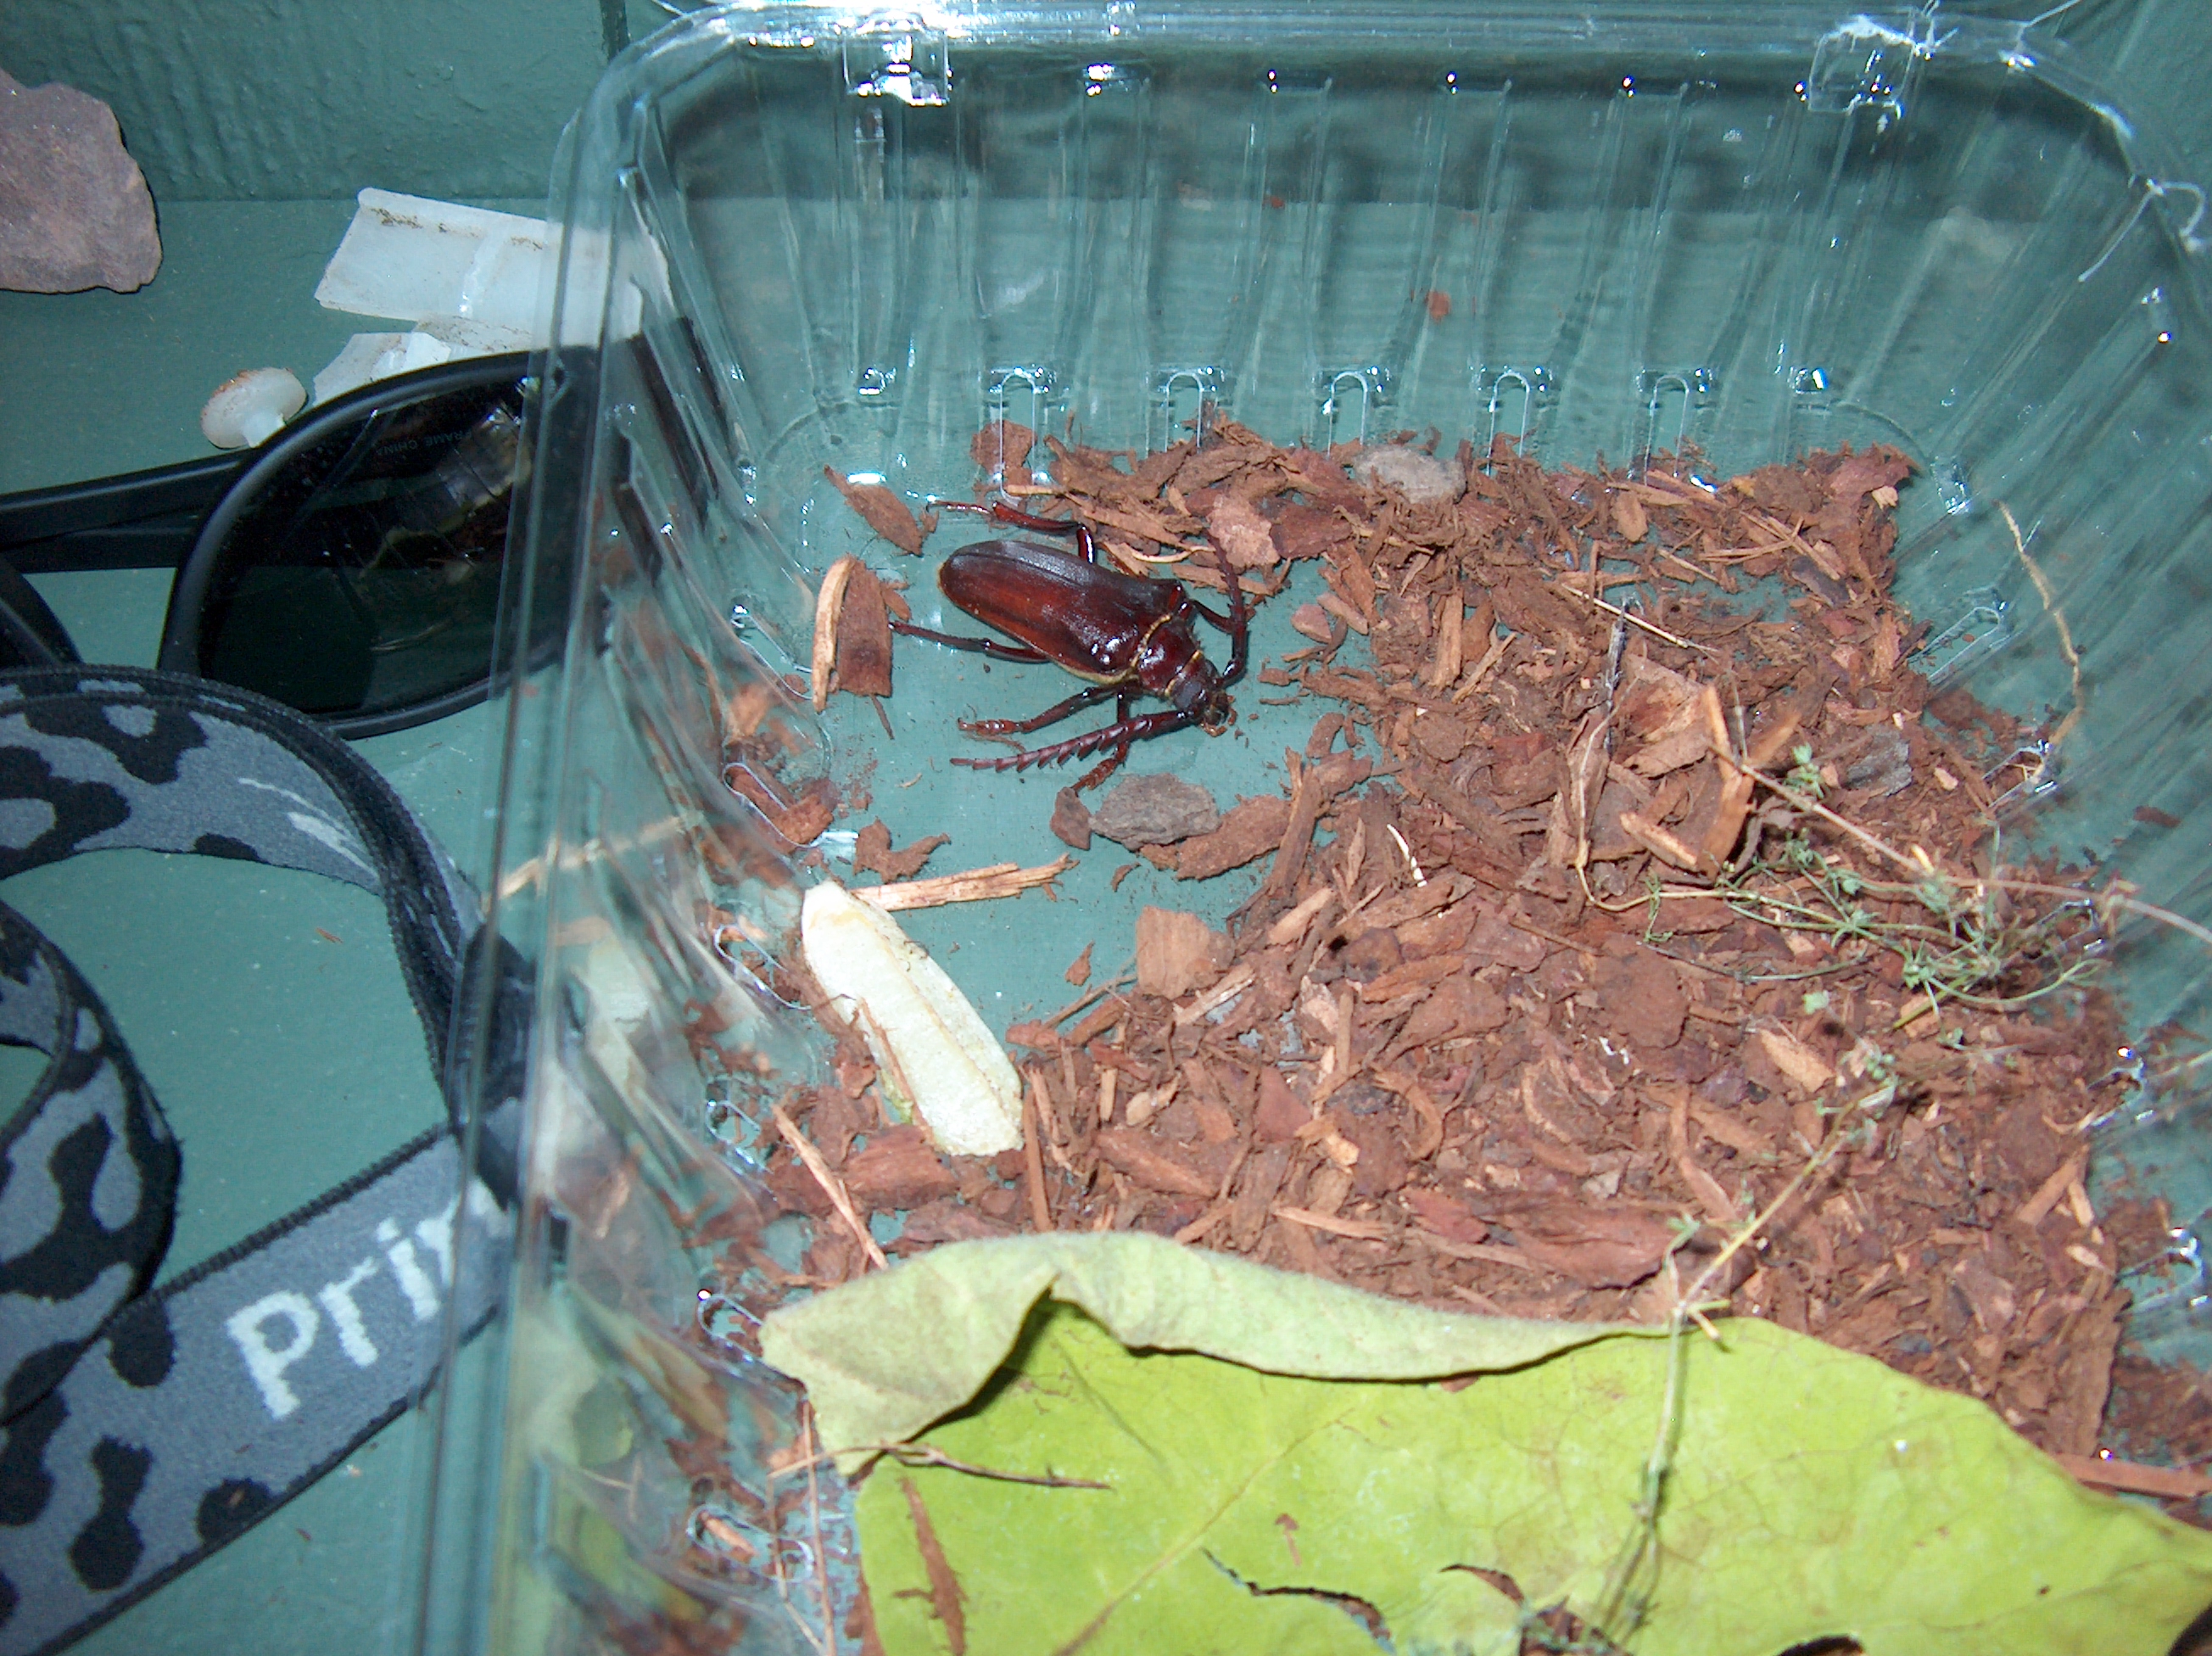 Probable brown spruce longhorn beetle